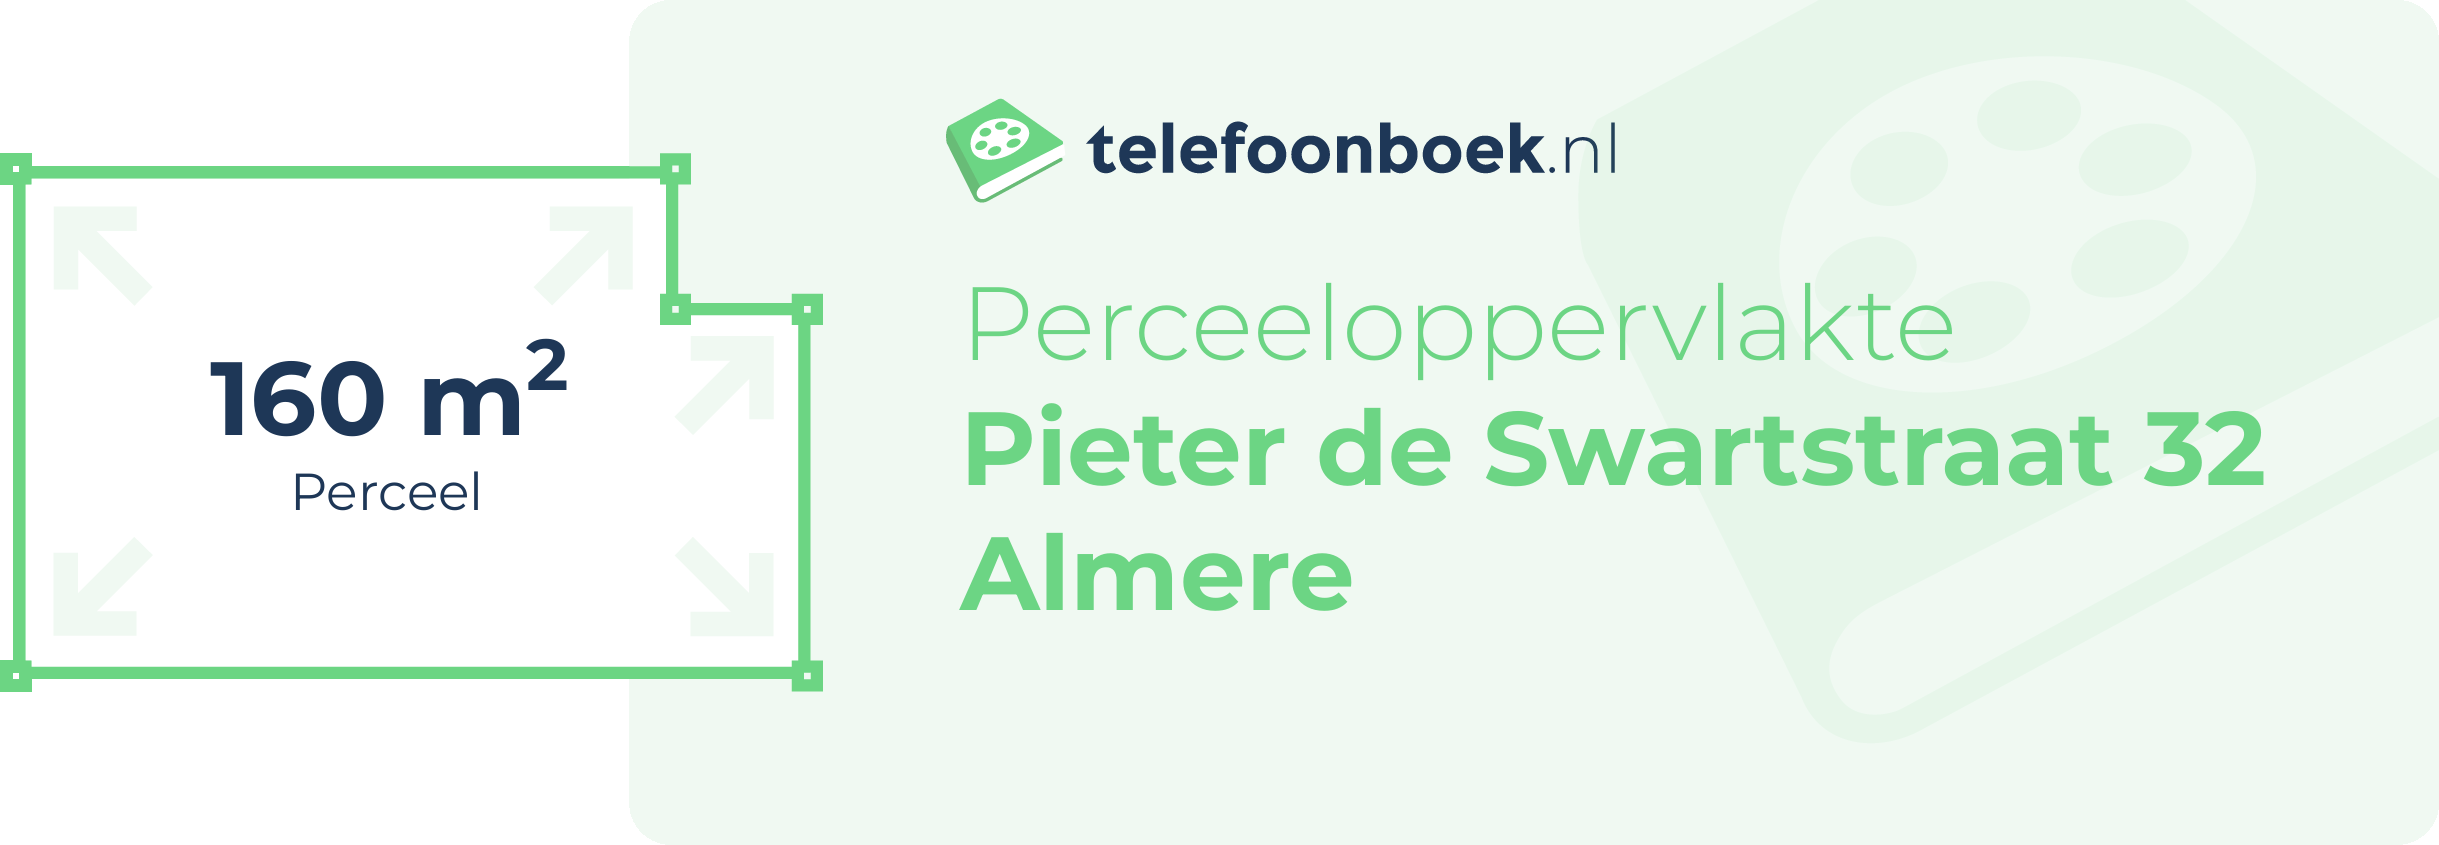 Perceeloppervlakte Pieter De Swartstraat 32 Almere